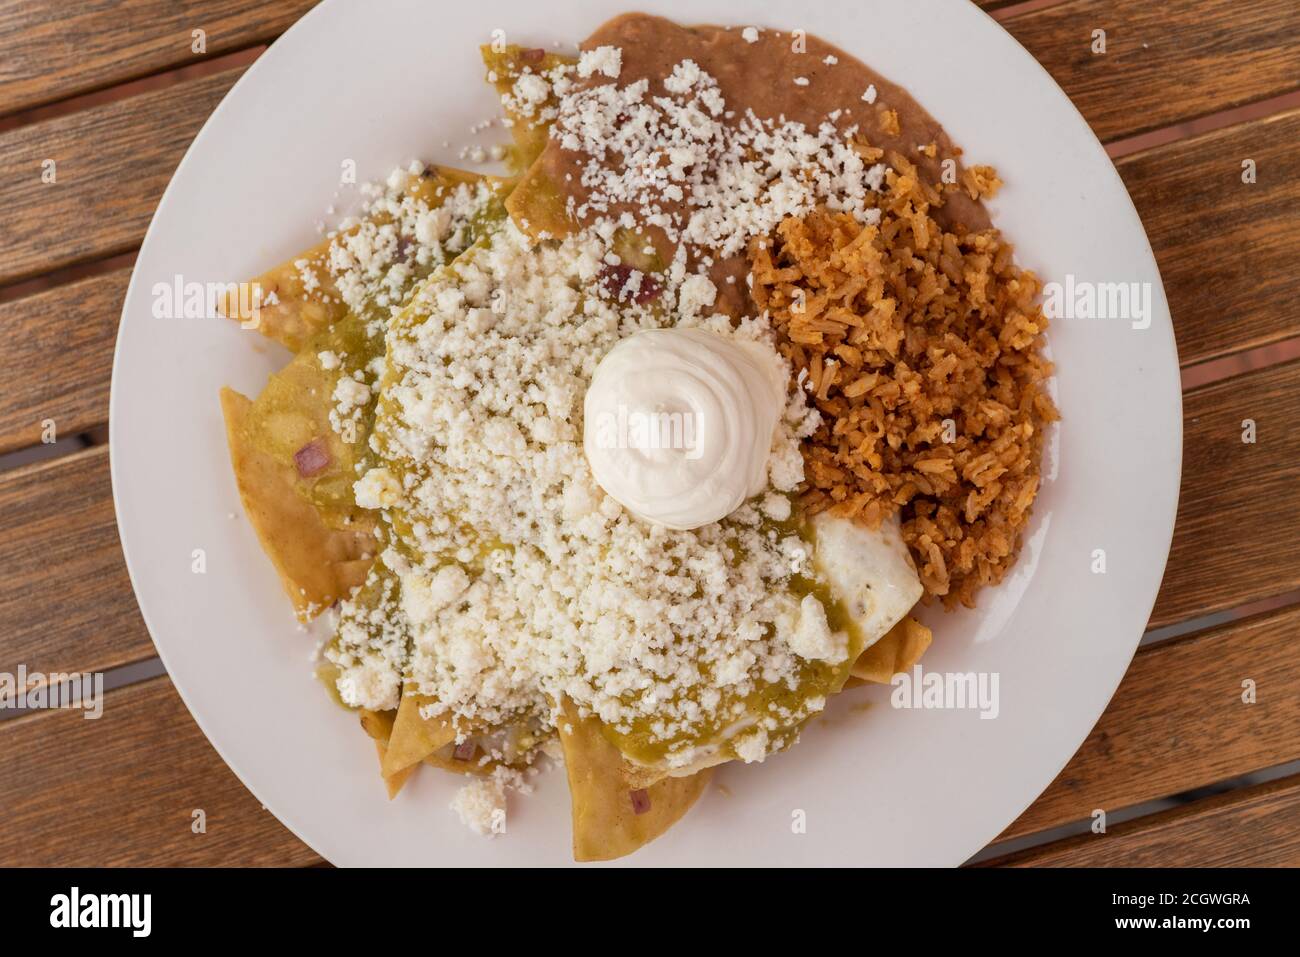 Grande piatto di chilaquiles con riso e fagioli fa un delizioso pasto messicano quando affamato. Foto Stock